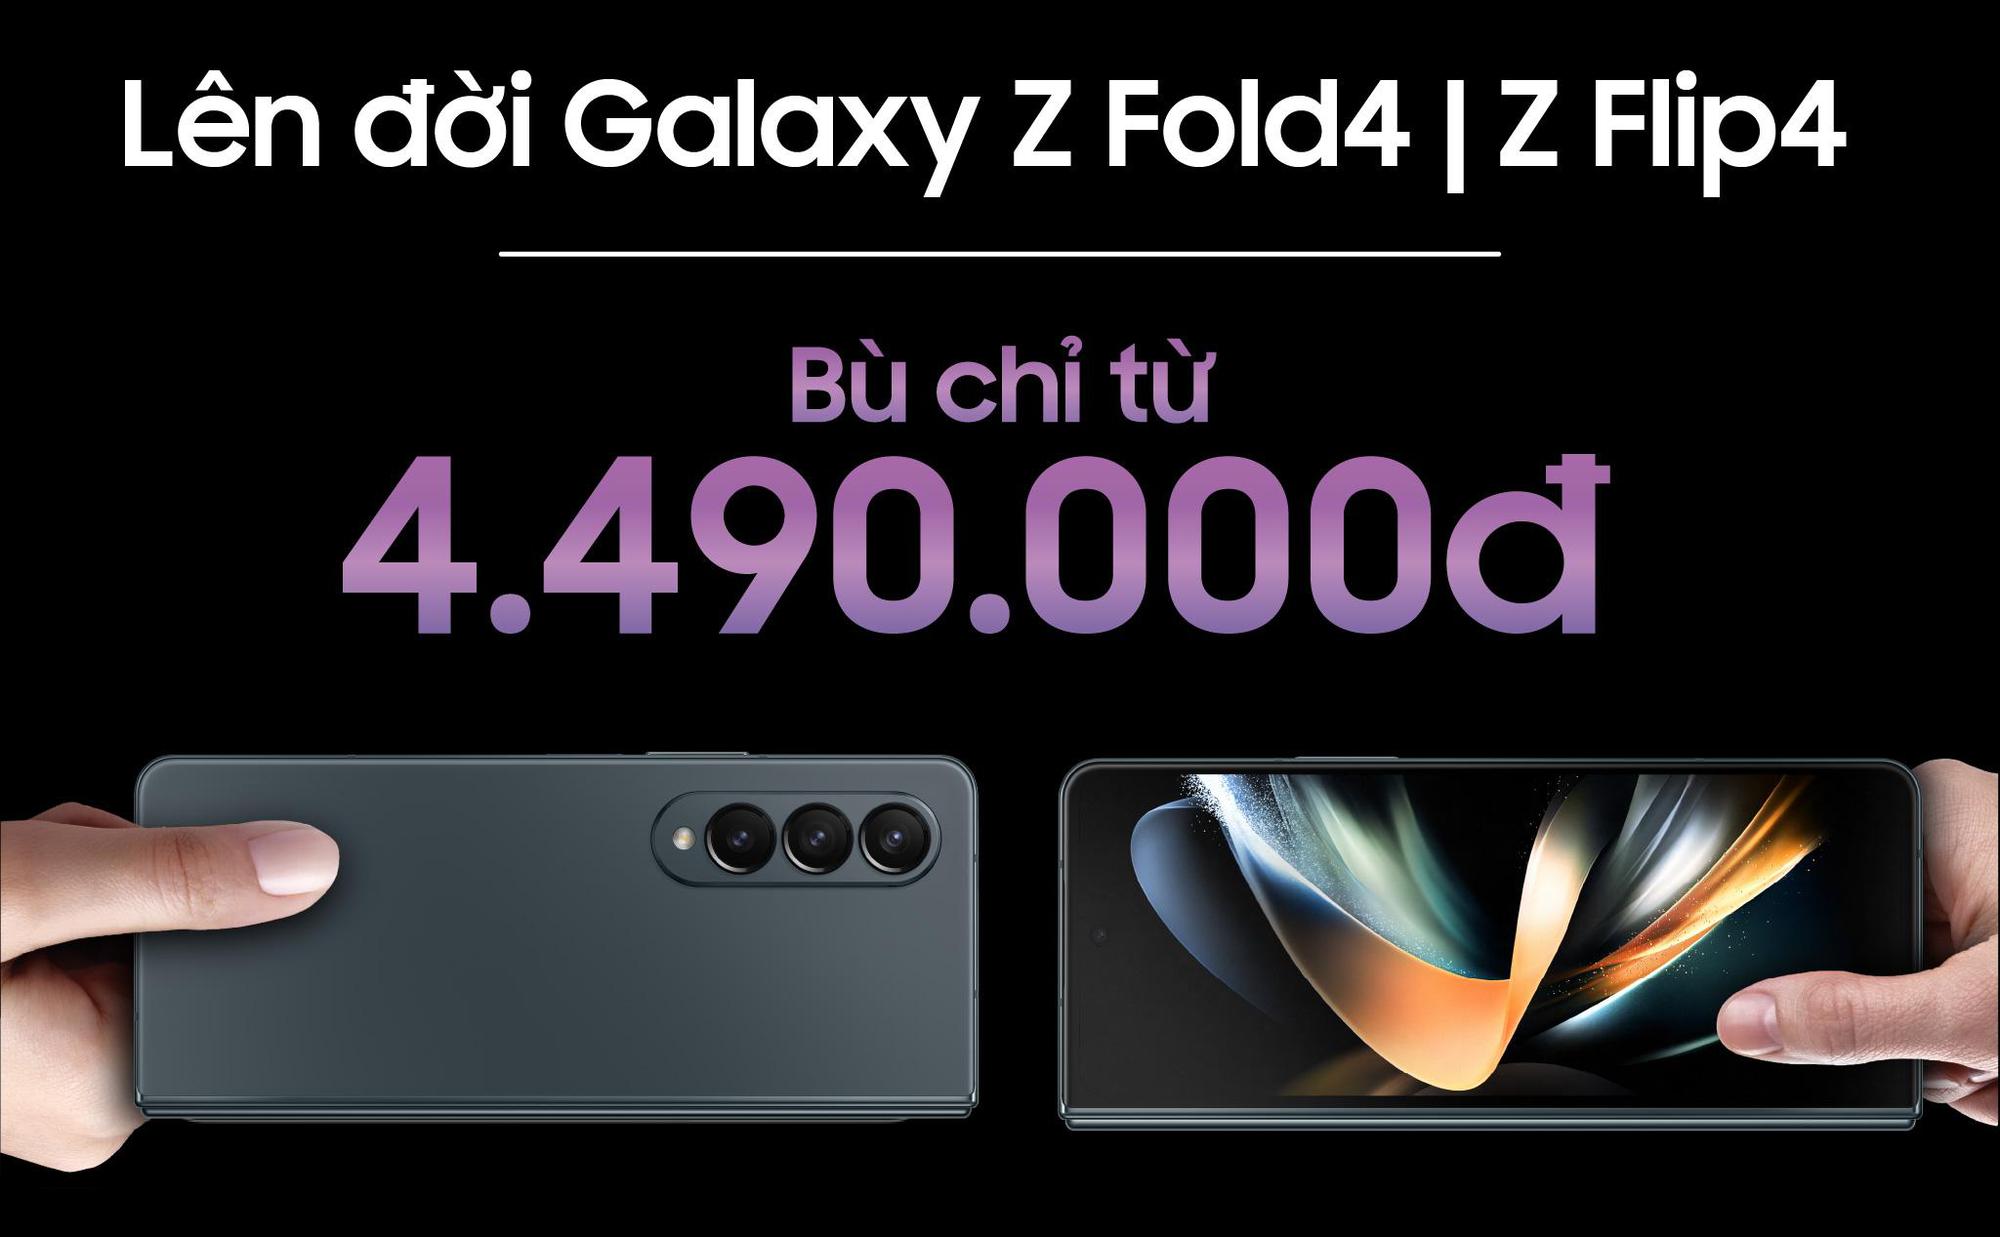 Lên đời Samsung Galaxy Z Fold4 và ZFlip4 chỉ bù từ 4,49 triệu đồng